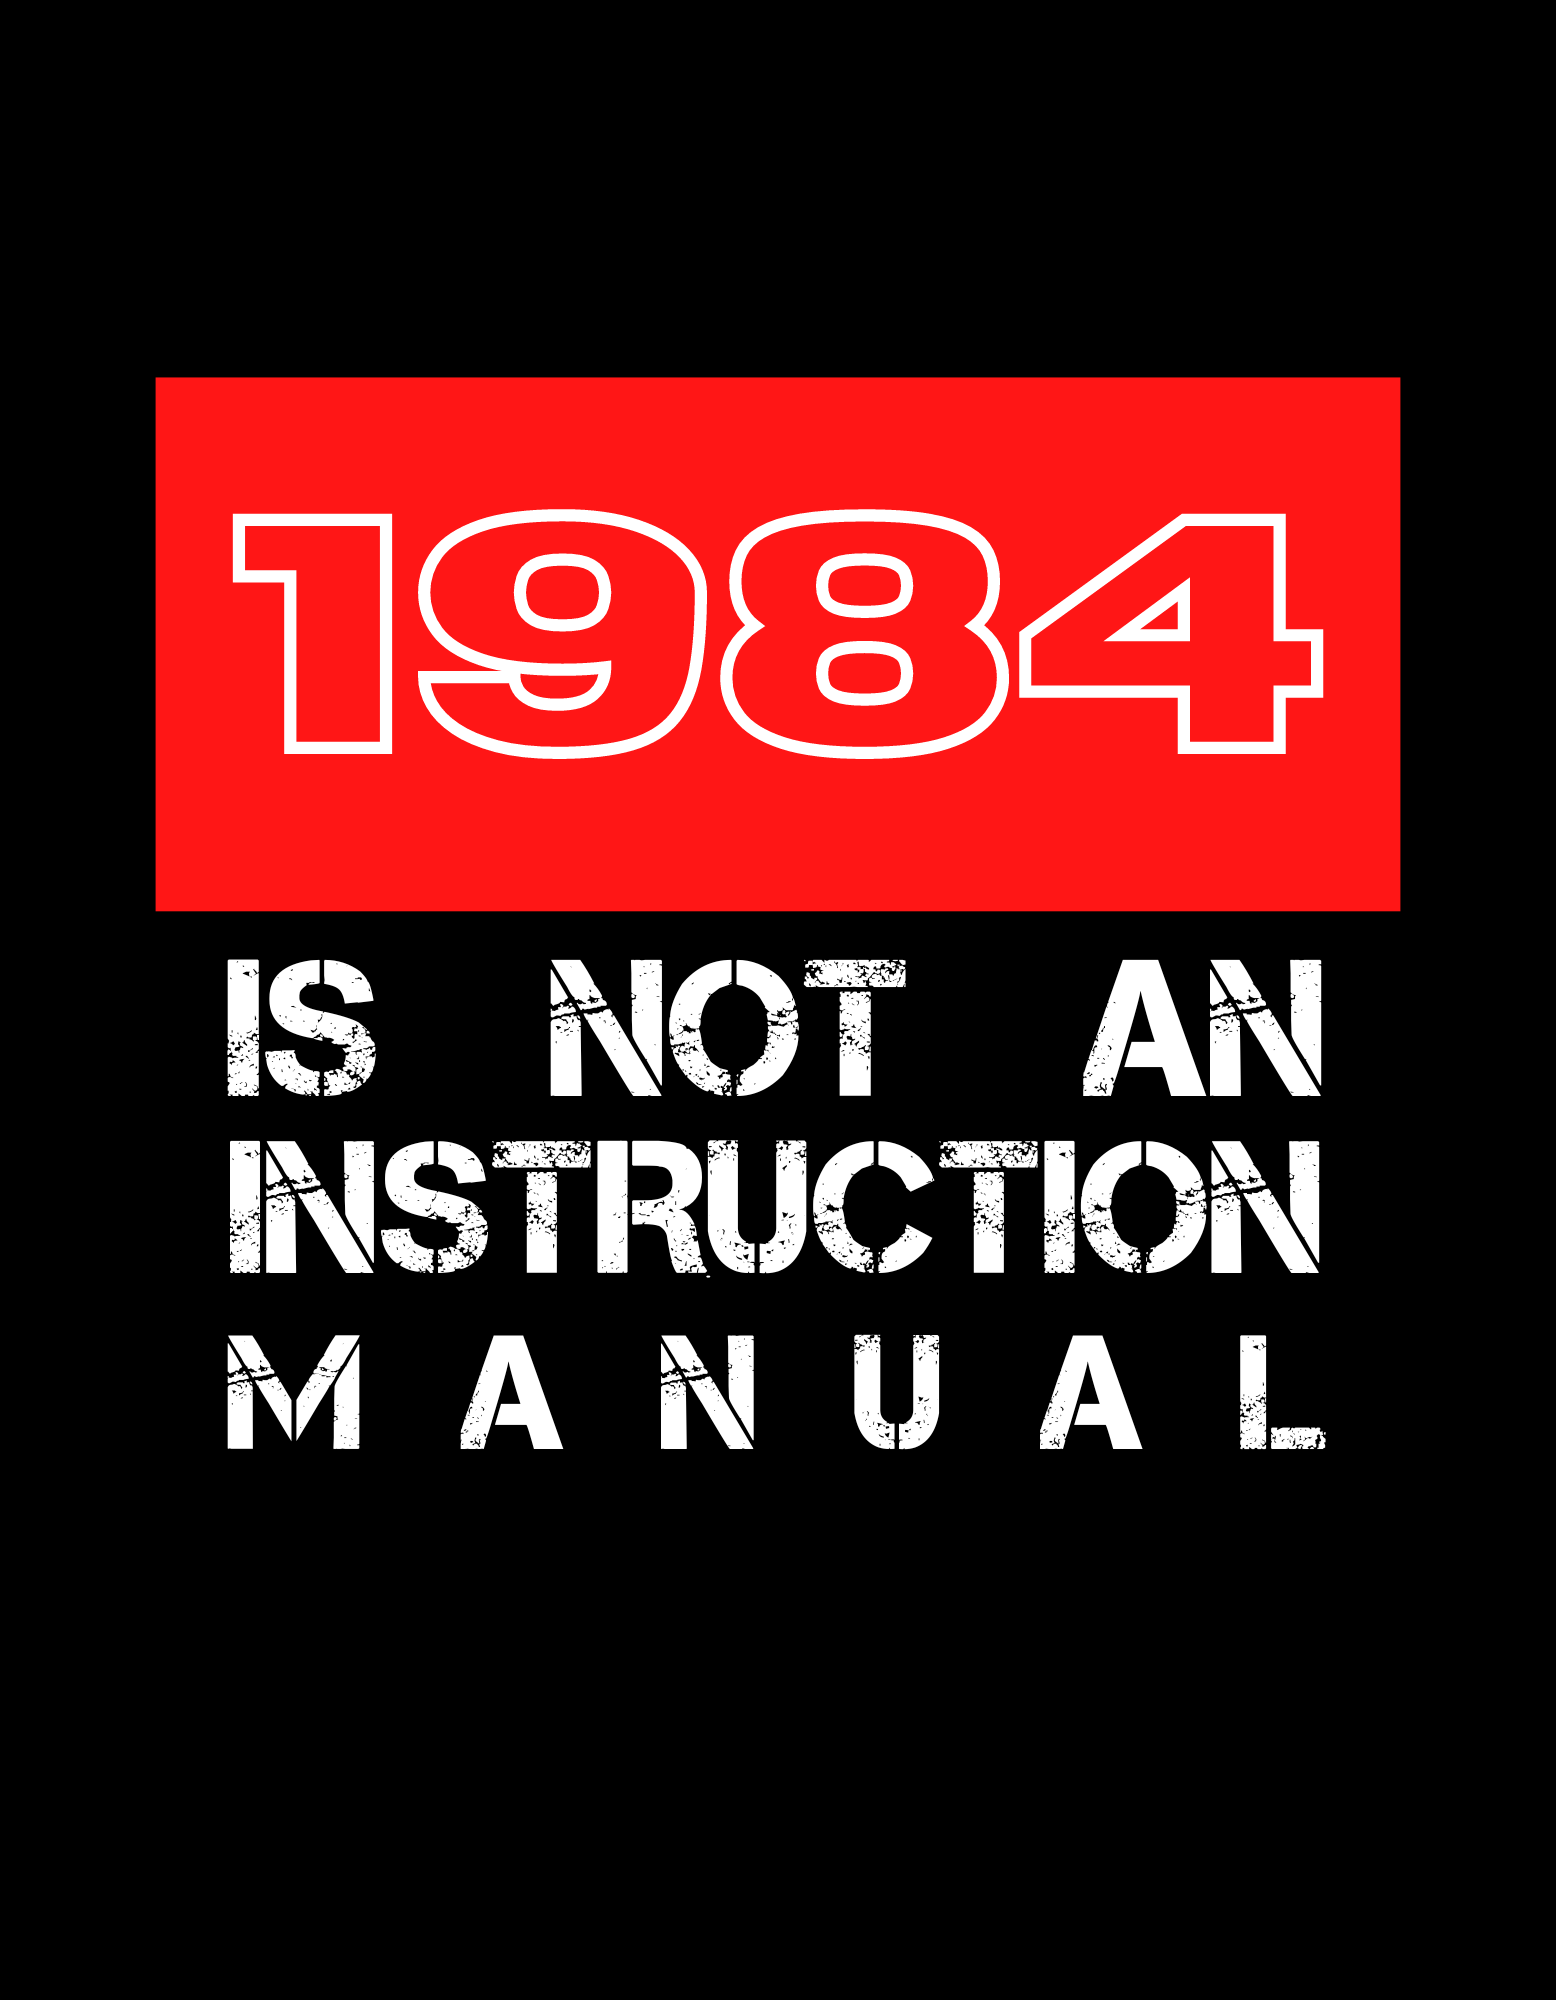 1984 Sticker